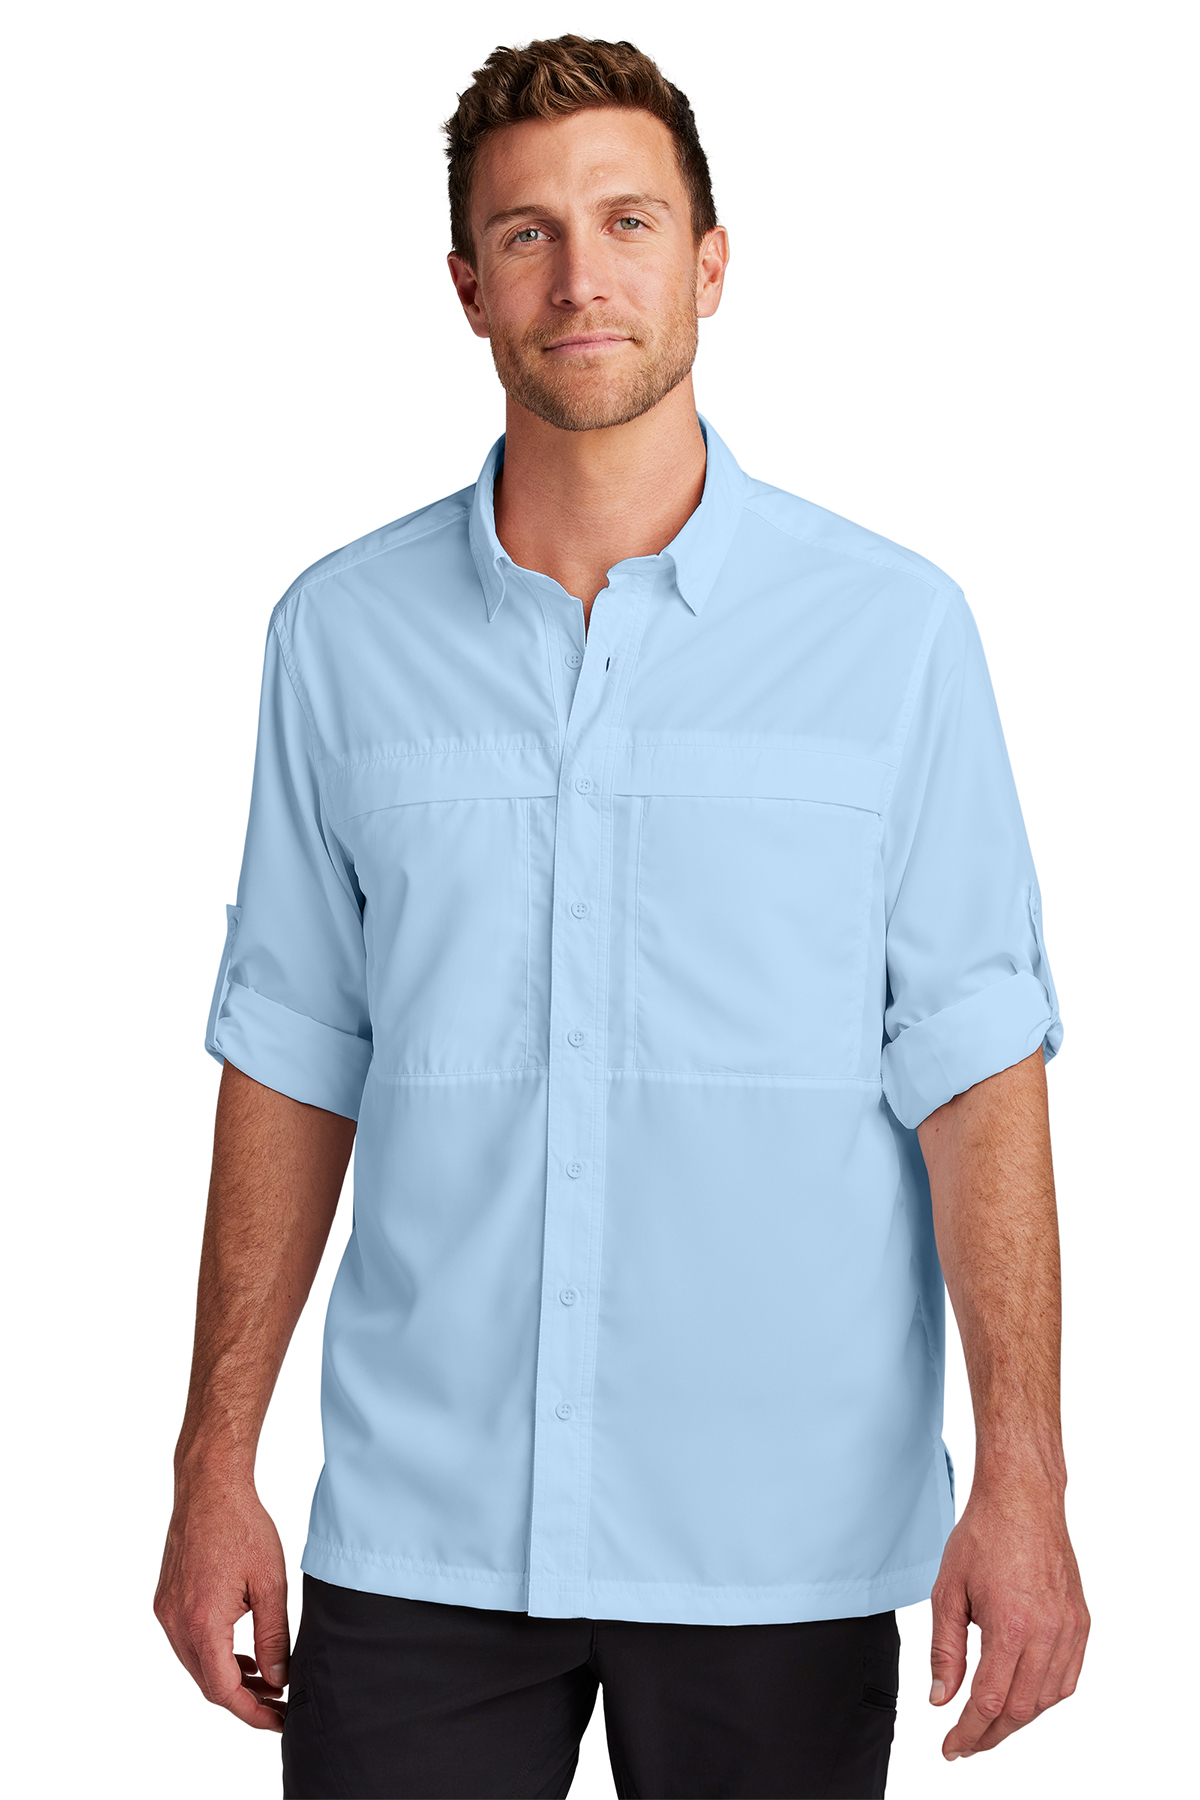 Port Authority Long Sleeve UV Daybreak Shirt, Product